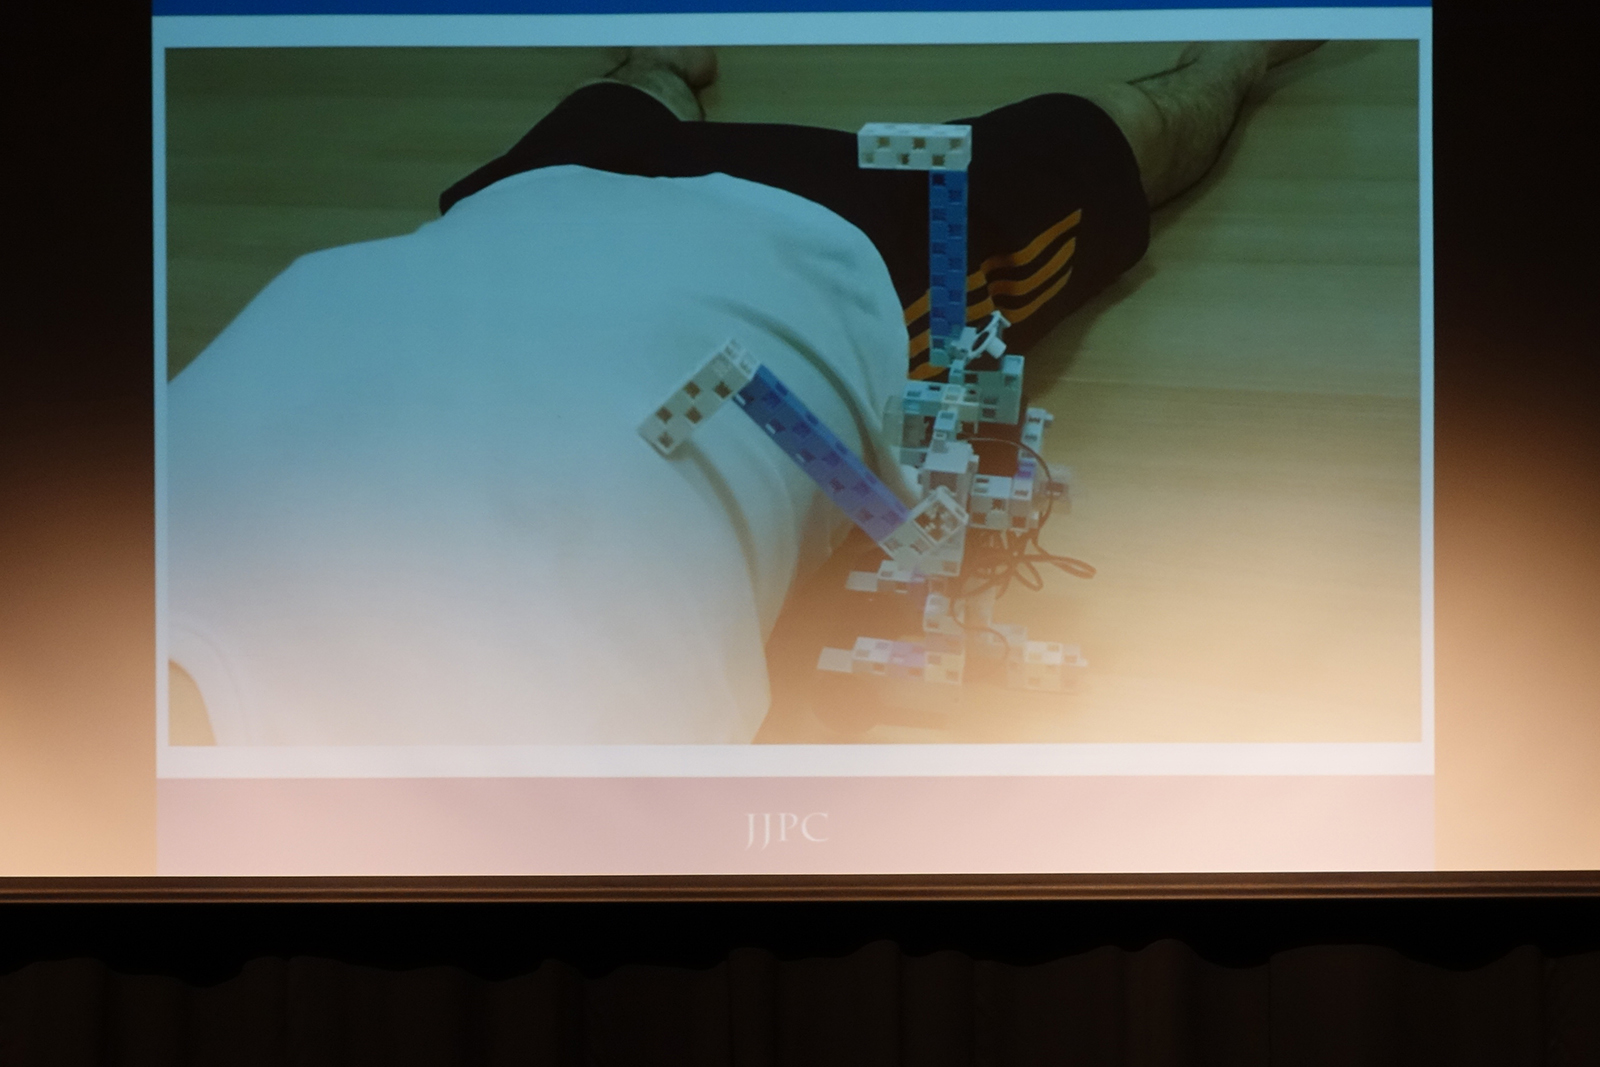 プレゼンテーションを行う崎山盛一さん。なかなか起きないお父さんを起こすために作ったロボット。まさしく「こんなのがあったらいいな」という作品だ